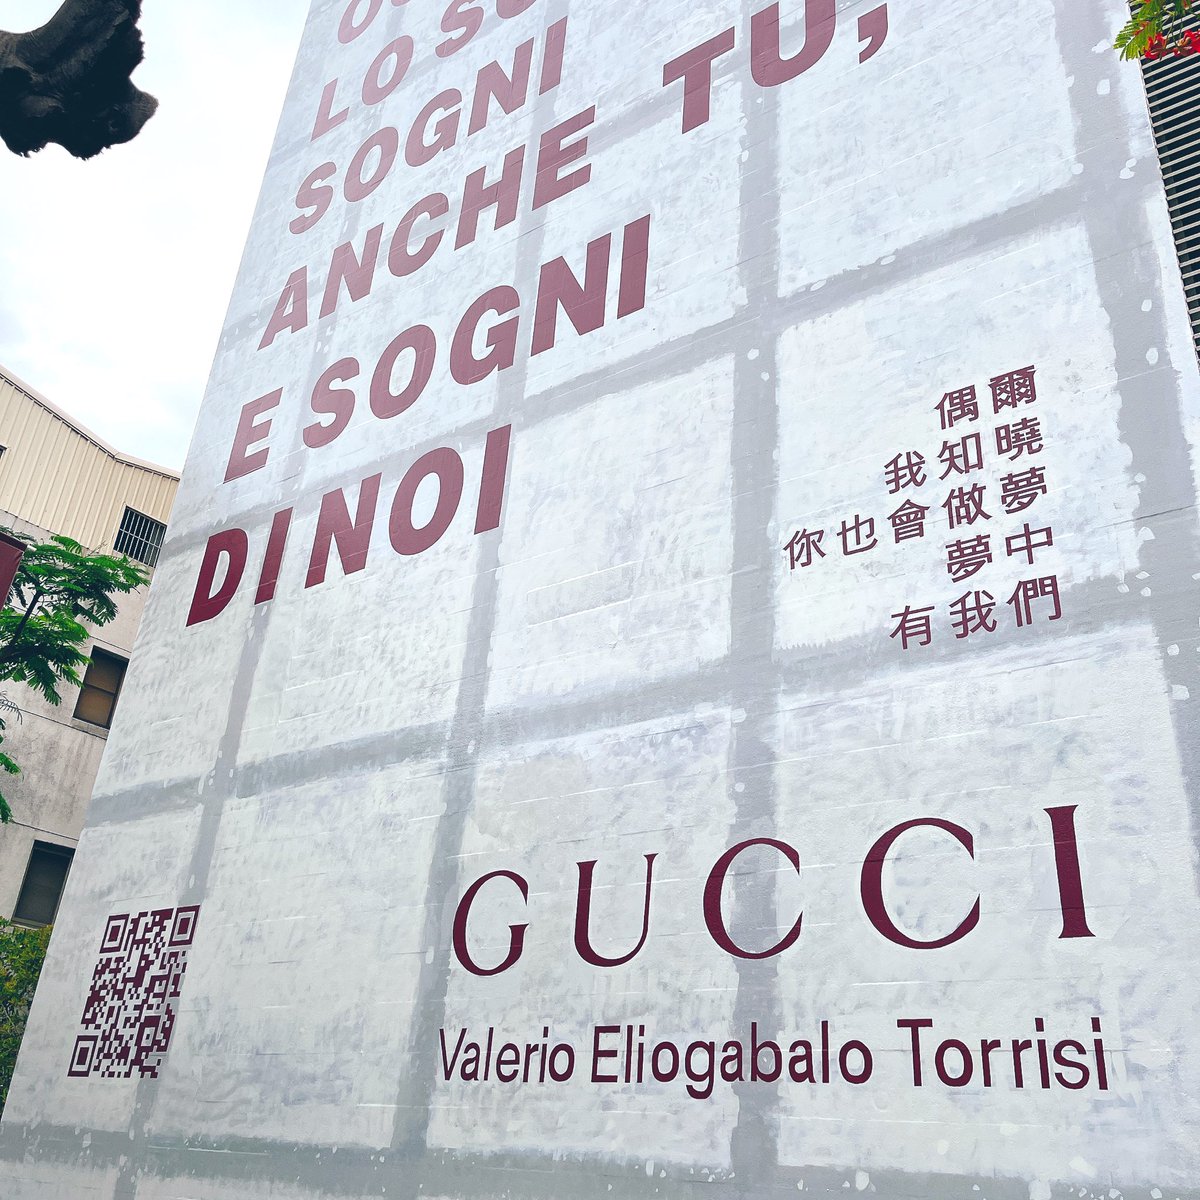 Gucci ANCORA @台南美術館

整個展廳比想像中小好多
10分鐘就可以逛完了🥹
預約參觀完畢可以去新光三越兌換小禮物🎁 #GucciAncora